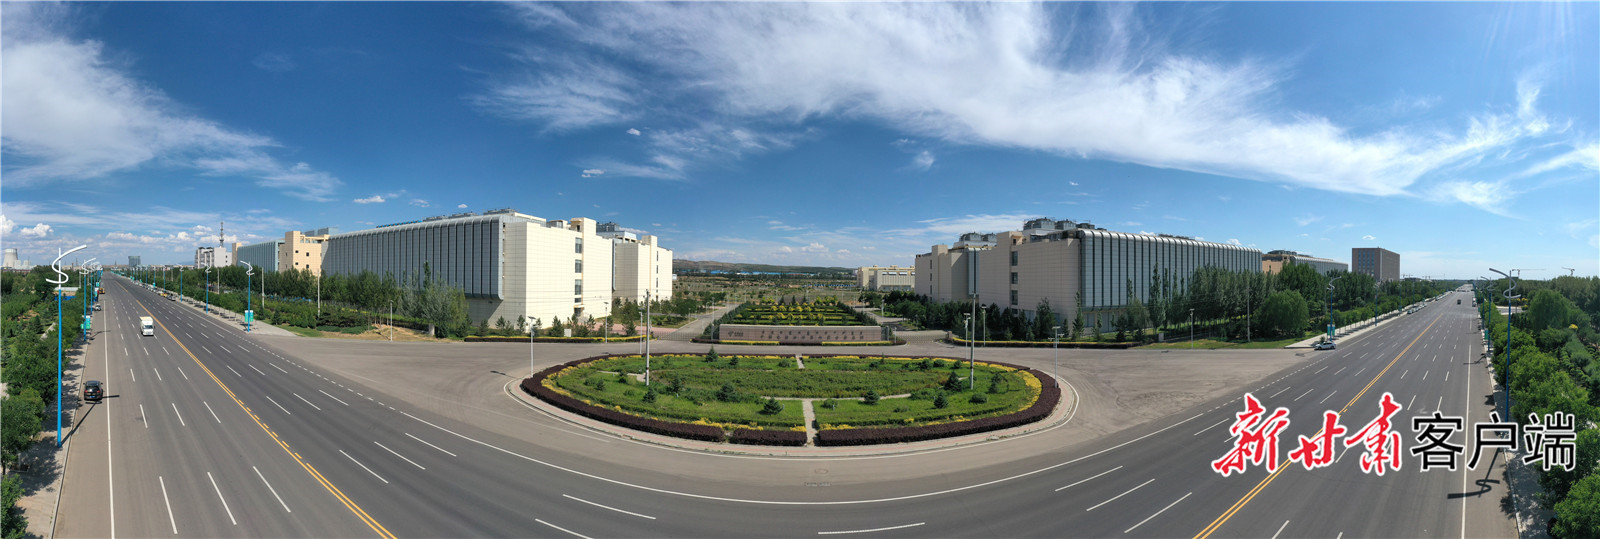 位于内蒙古呼和浩特市和林格尔新区的中国电信全国最大数据中心基地 陈媛媛